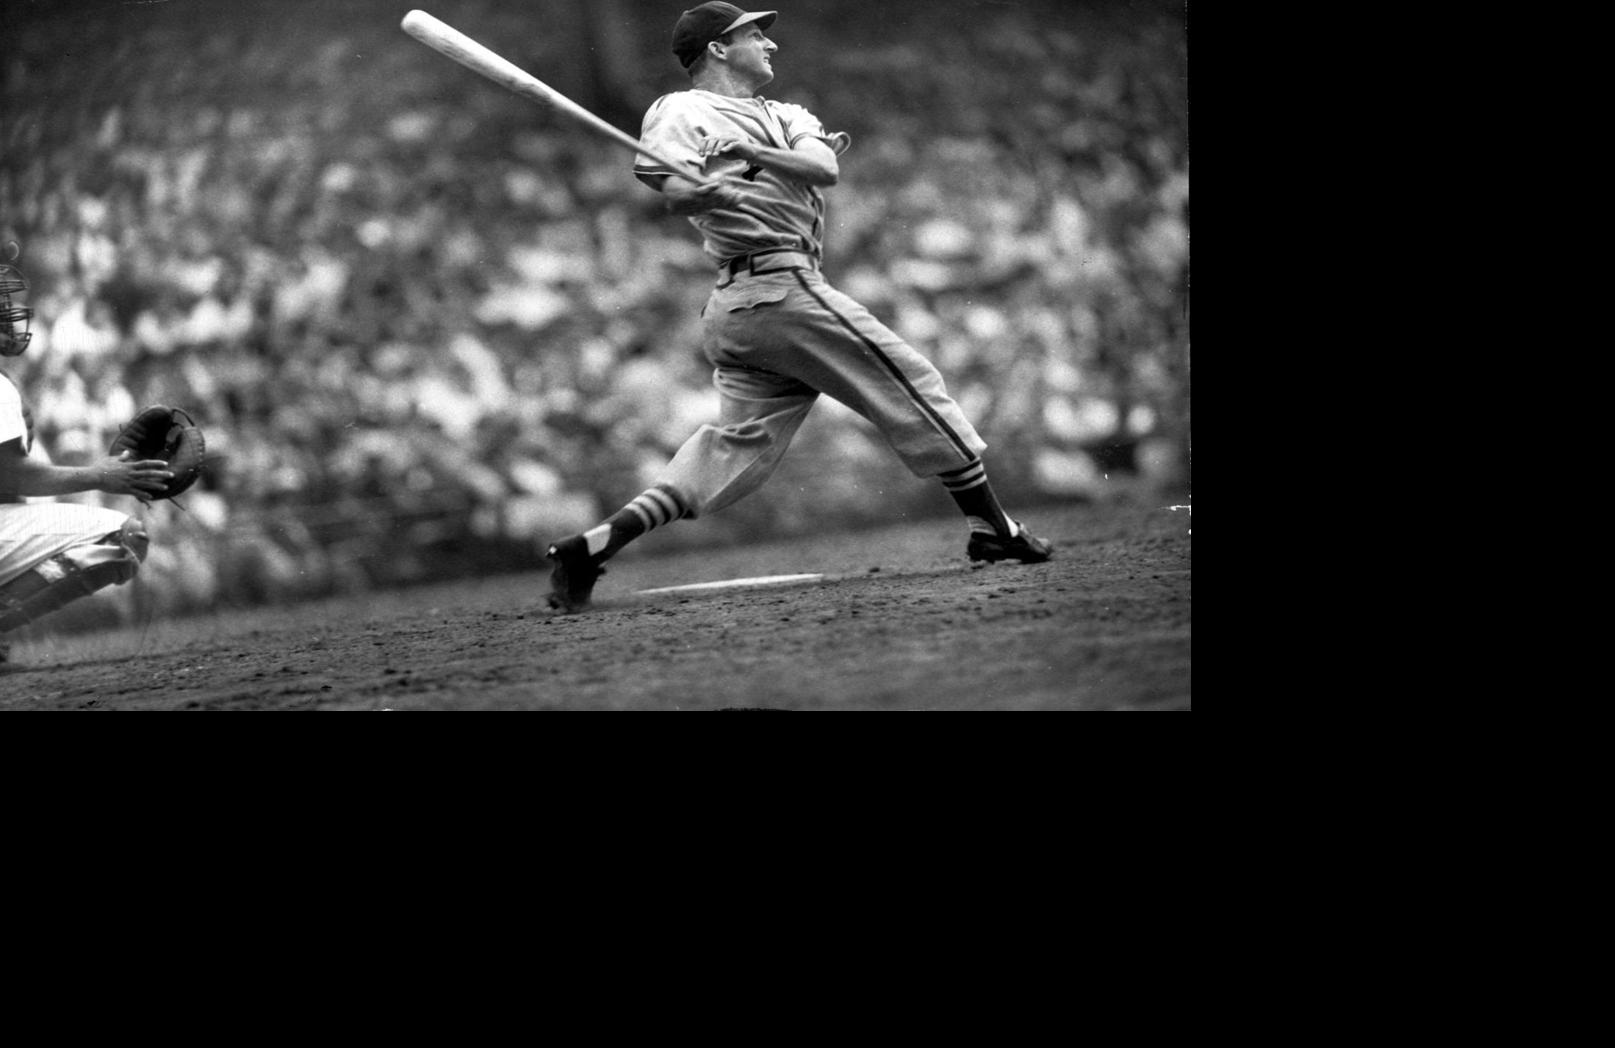 Musial, Stan  Baseball Hall of Fame